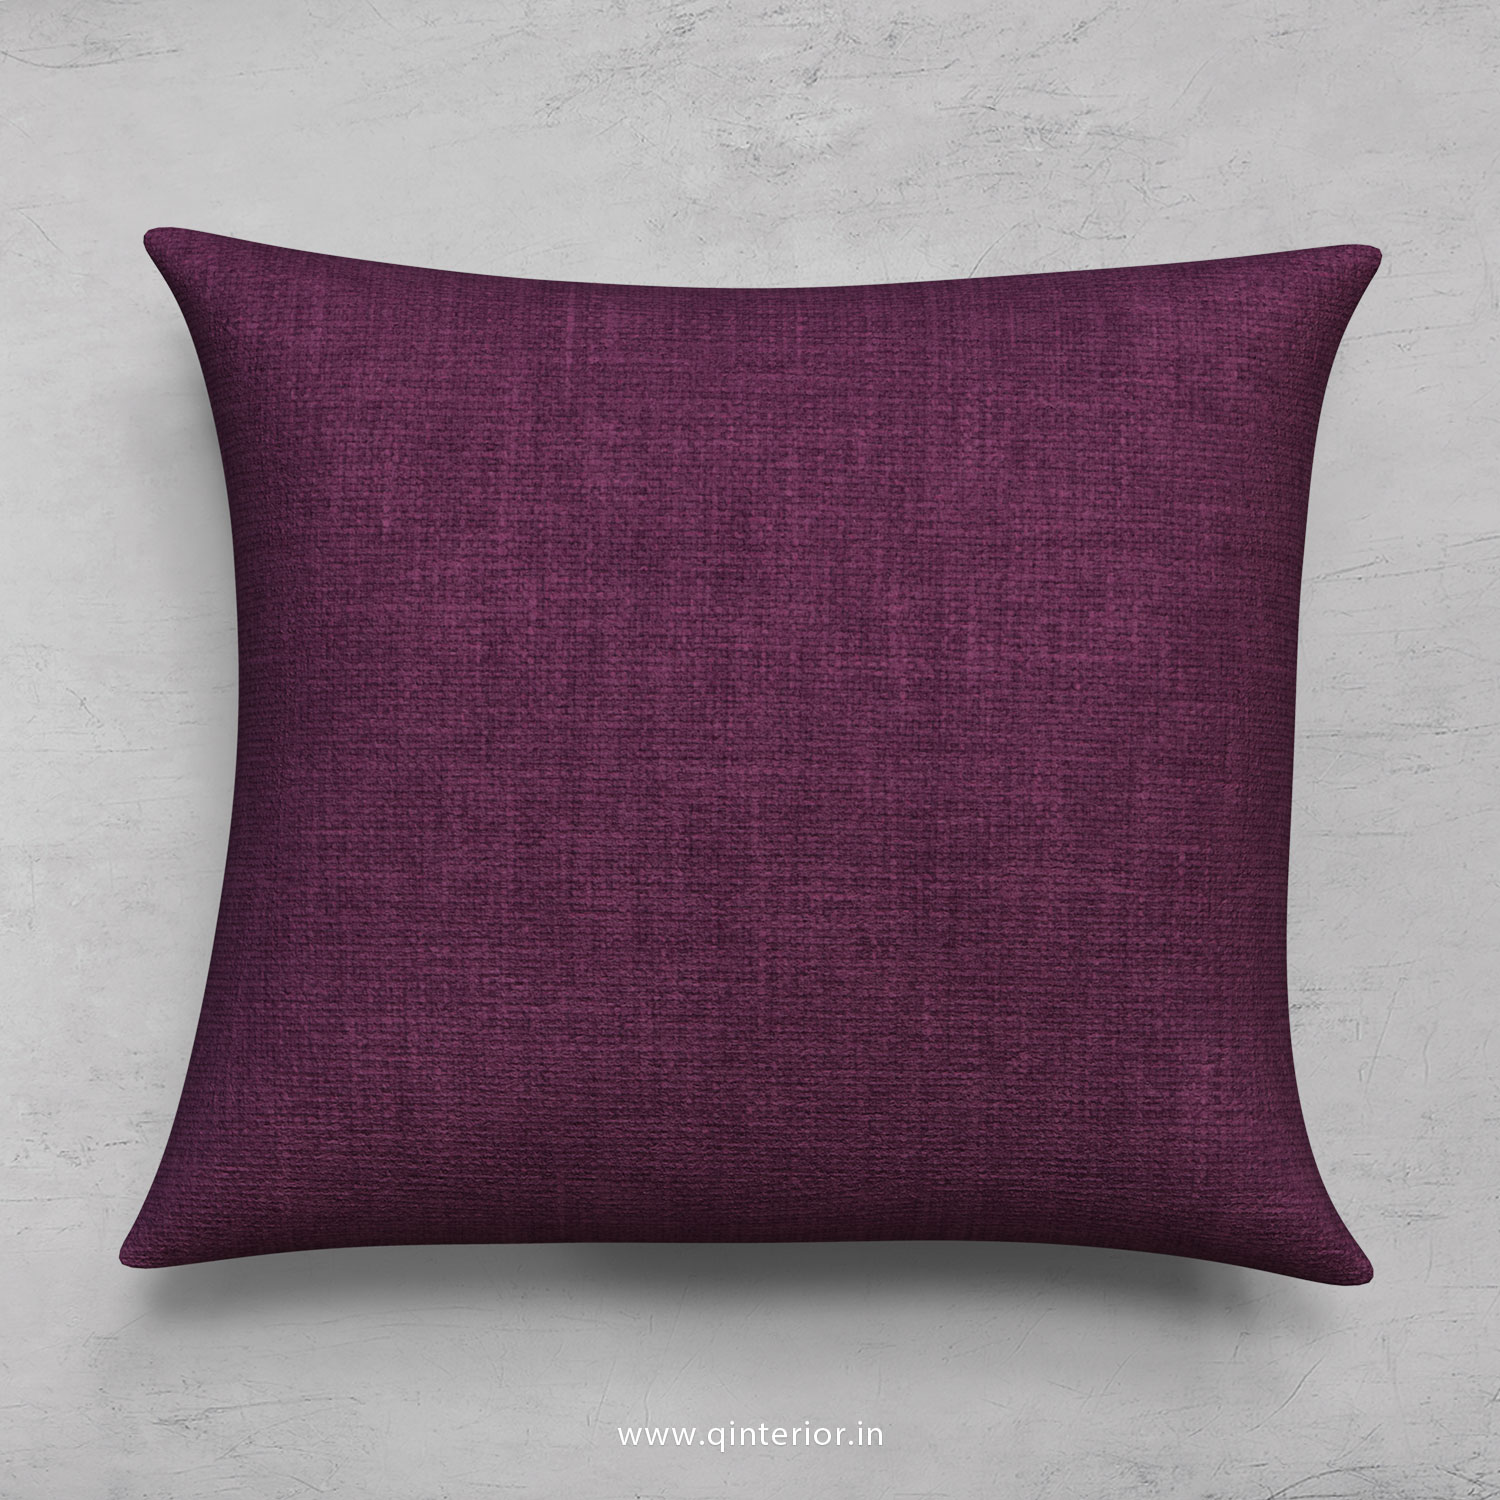 Cushion With Cushion Cover in Cotton Plain - CUS001 CP26